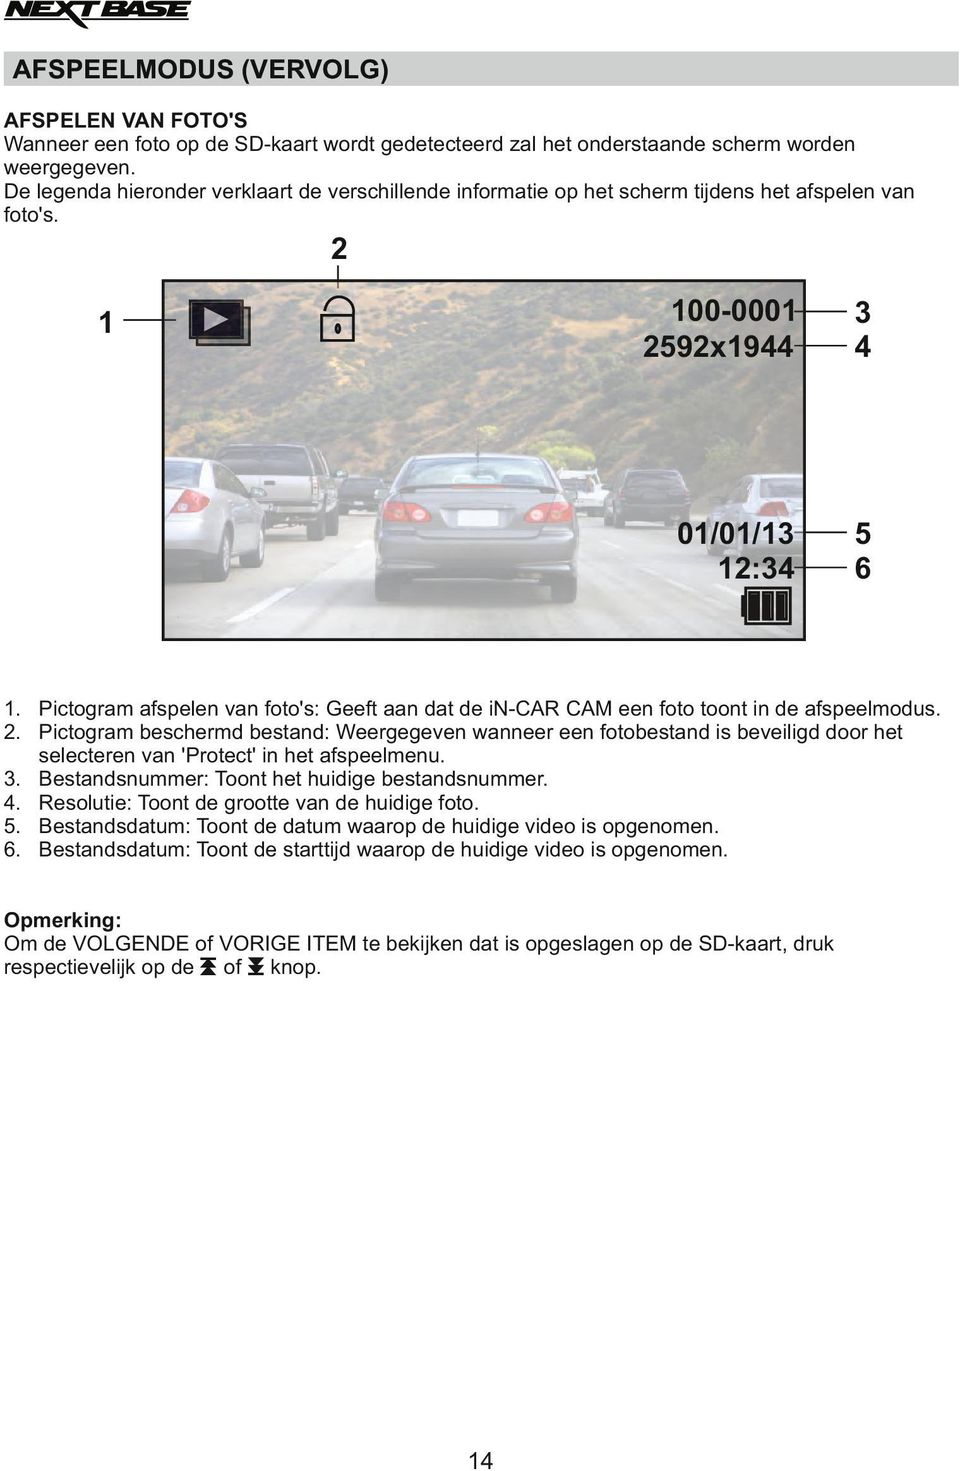 Pictogram afspelen van foto's: Geeft aan dat de in-car CAM een foto toont in de afspeelmodus. 2.